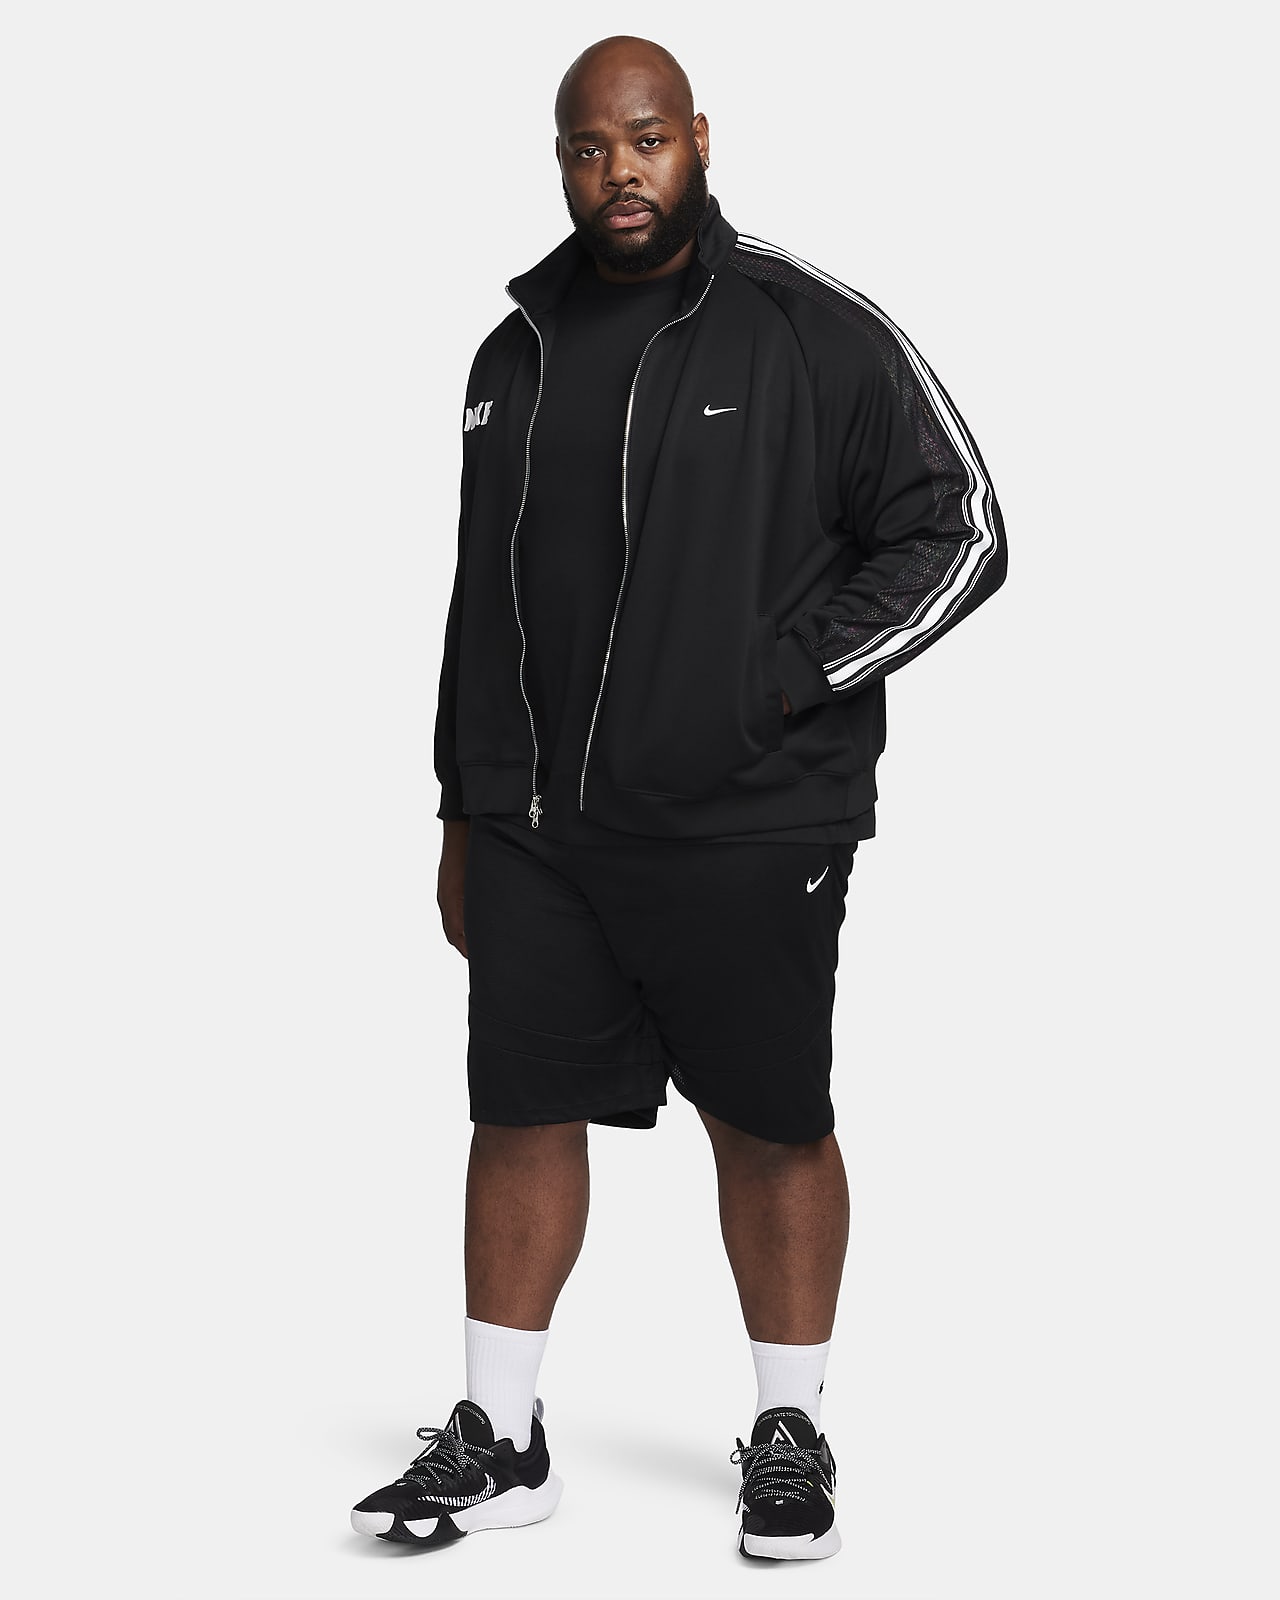 Basketball Jackets. Nike CA